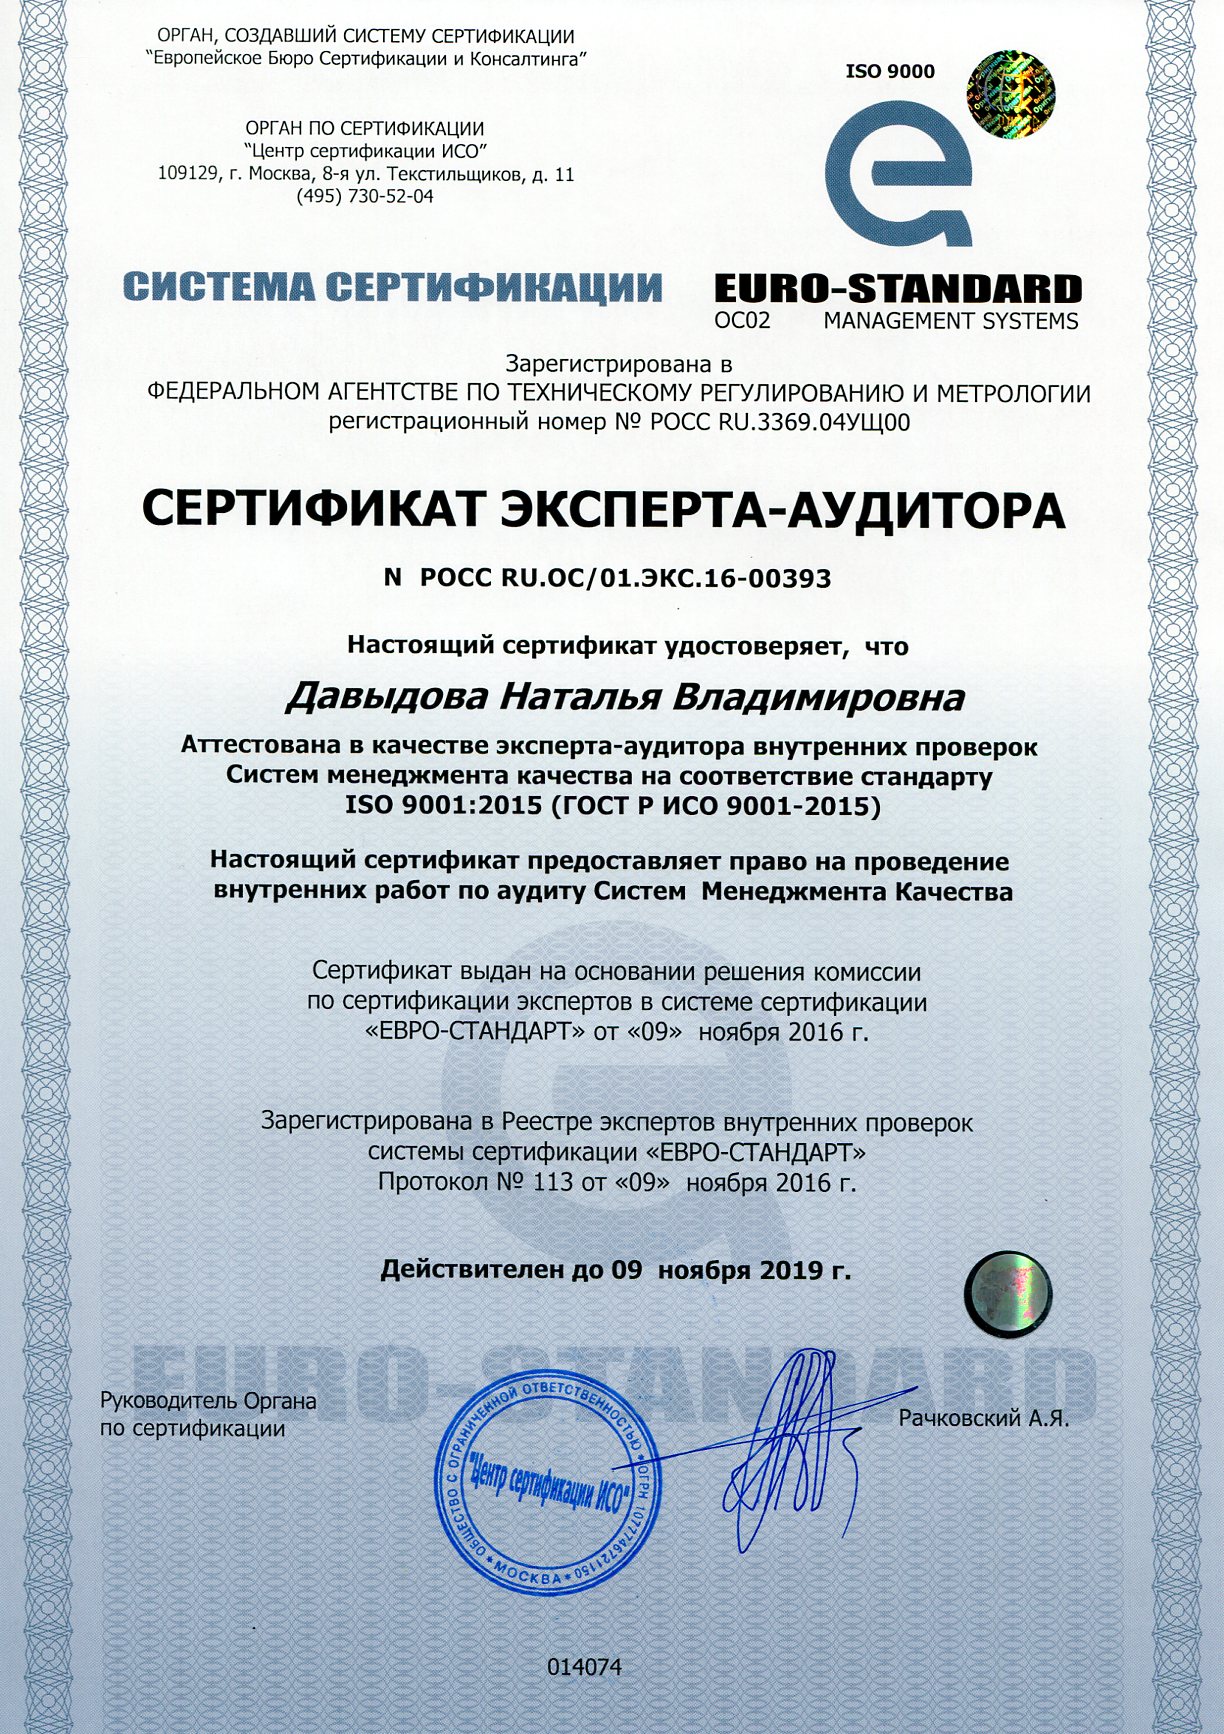 Сертификат эксперта-аудитора1